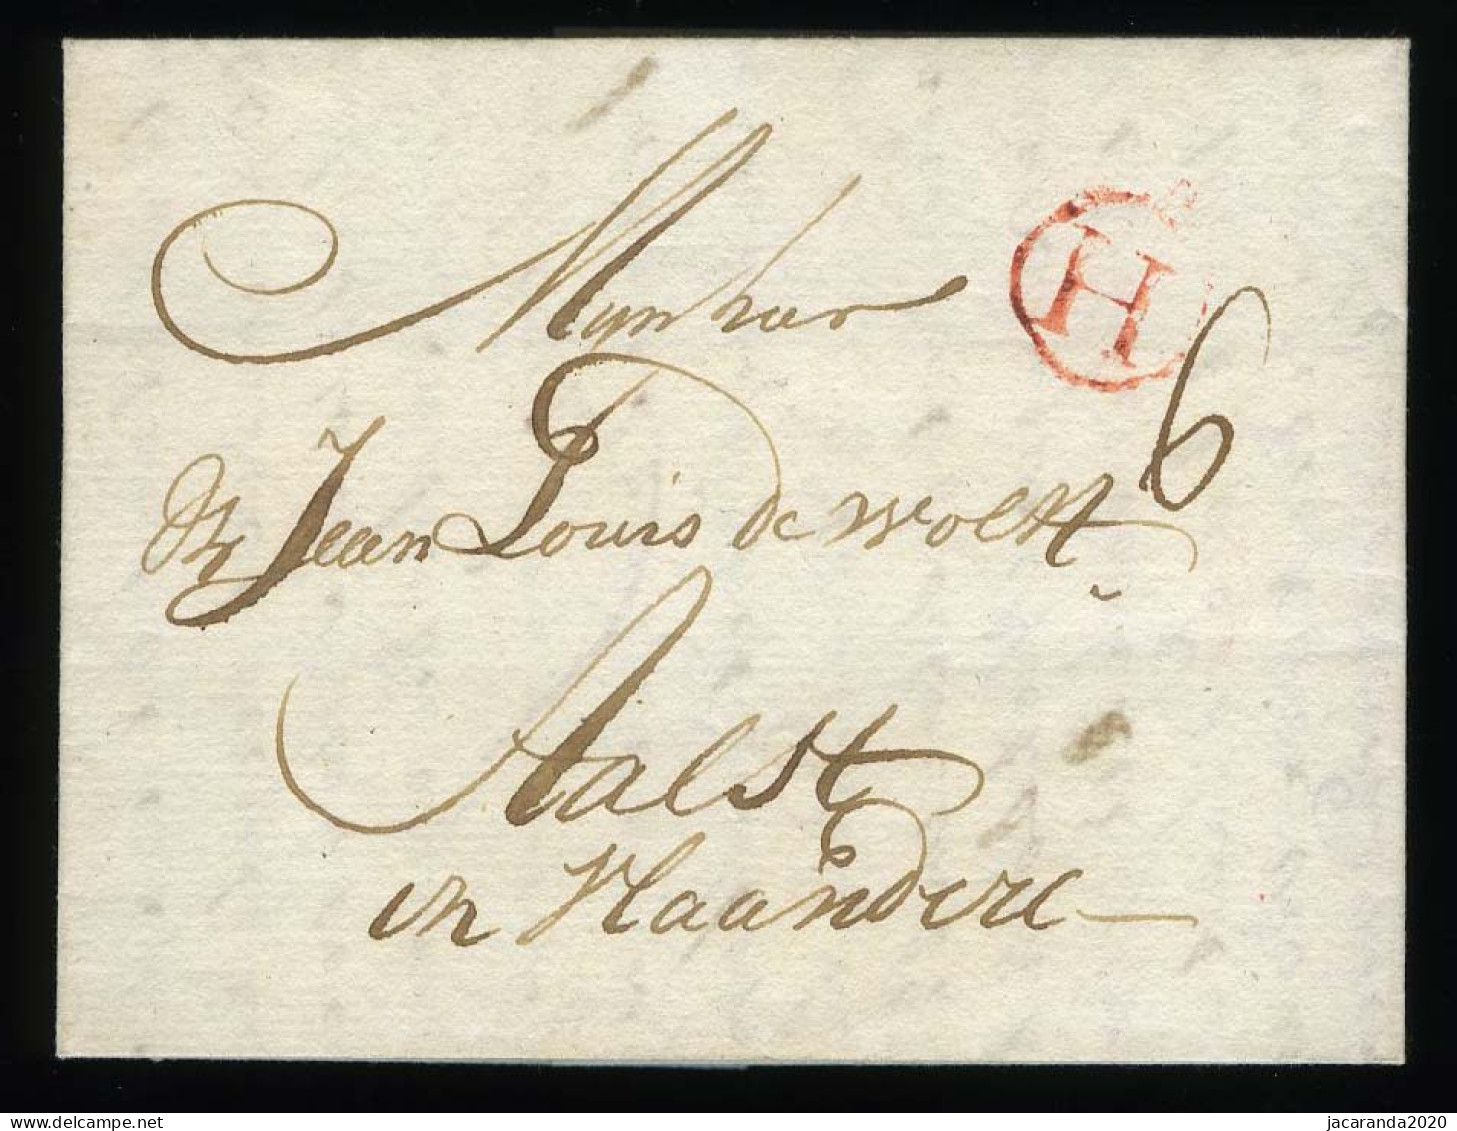 België Voorloper - Précurseur - 17 September 1779 - Cachet Rouge H - Port 6 - 1714-1794 (Paises Bajos Austriacos)